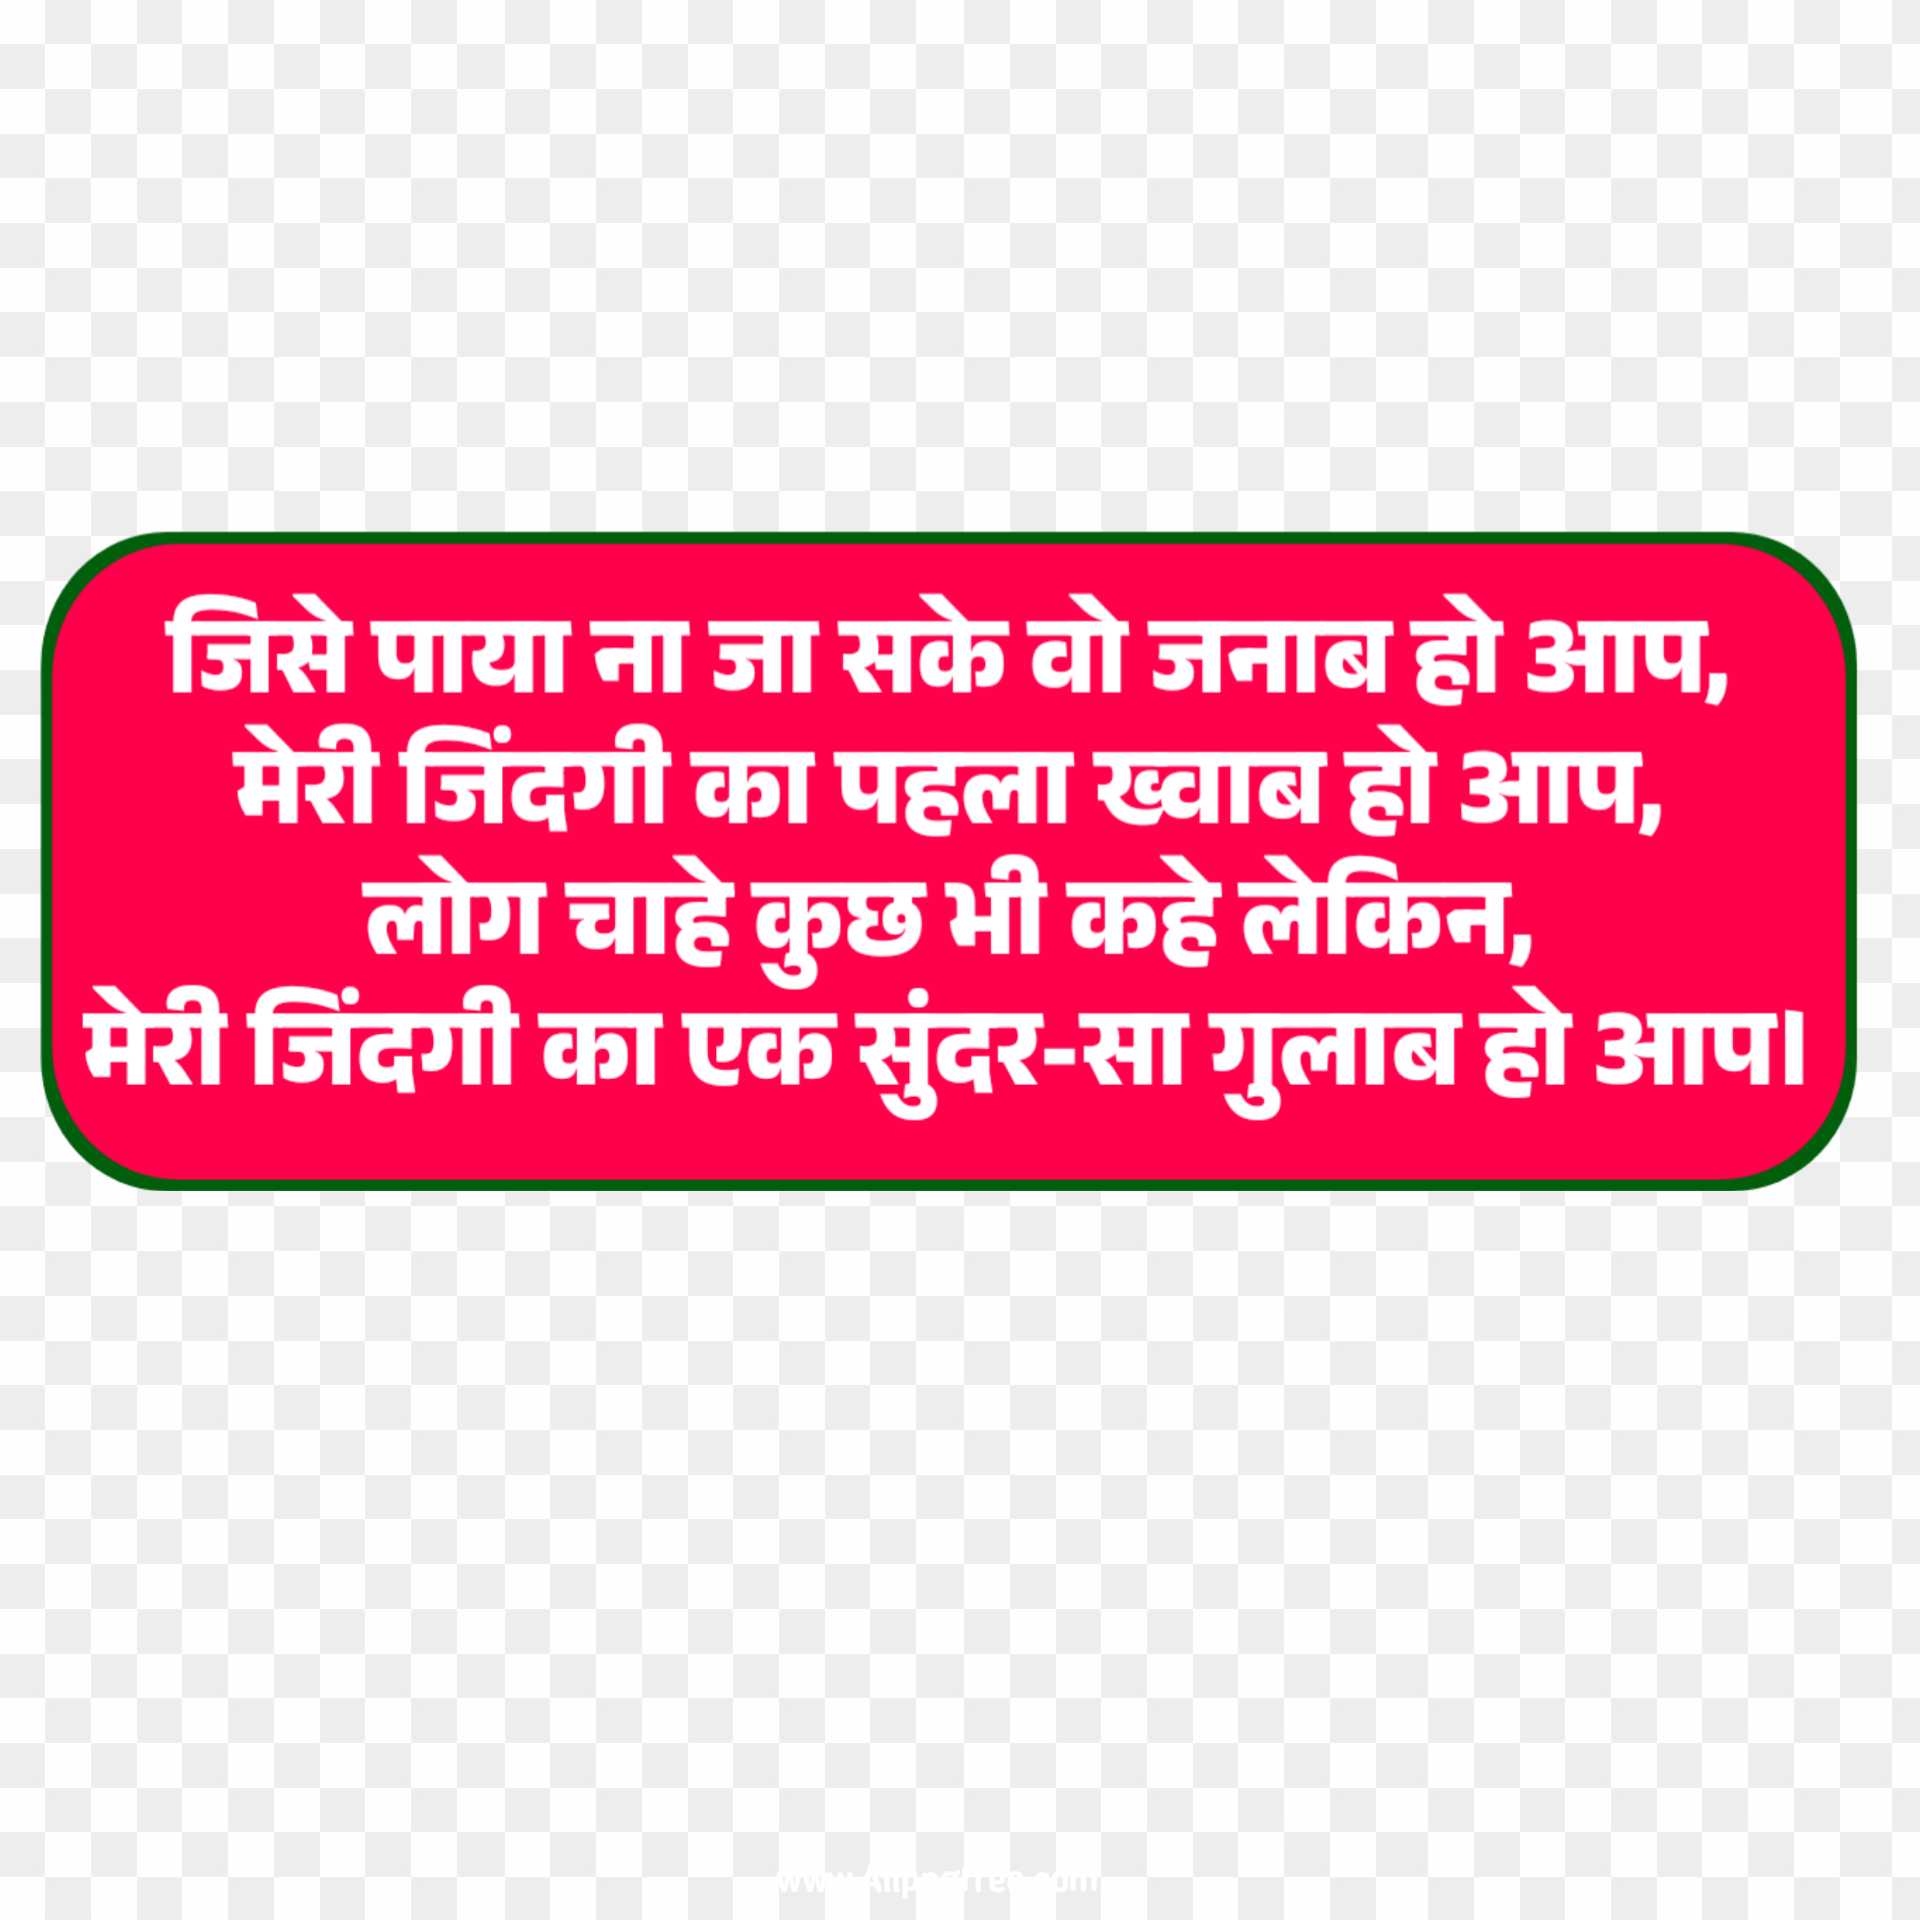 Rose day gulab shayari quotes in Hindi Png Images 